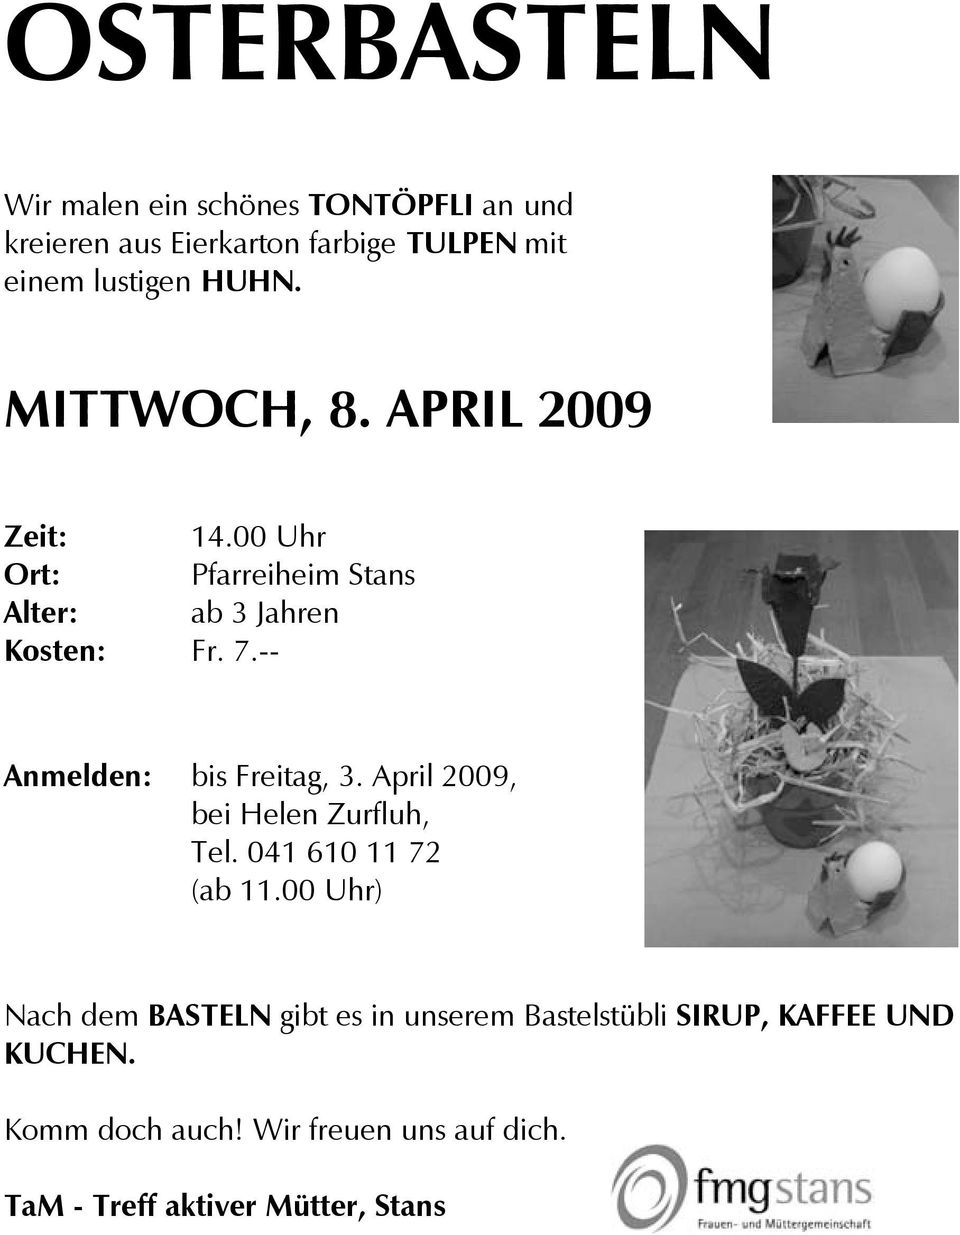 -- Anmelden: bis Freitag, 3. April 2009, bei Helen Zurfluh, Tel. 041 610 11 72 (ab 11.